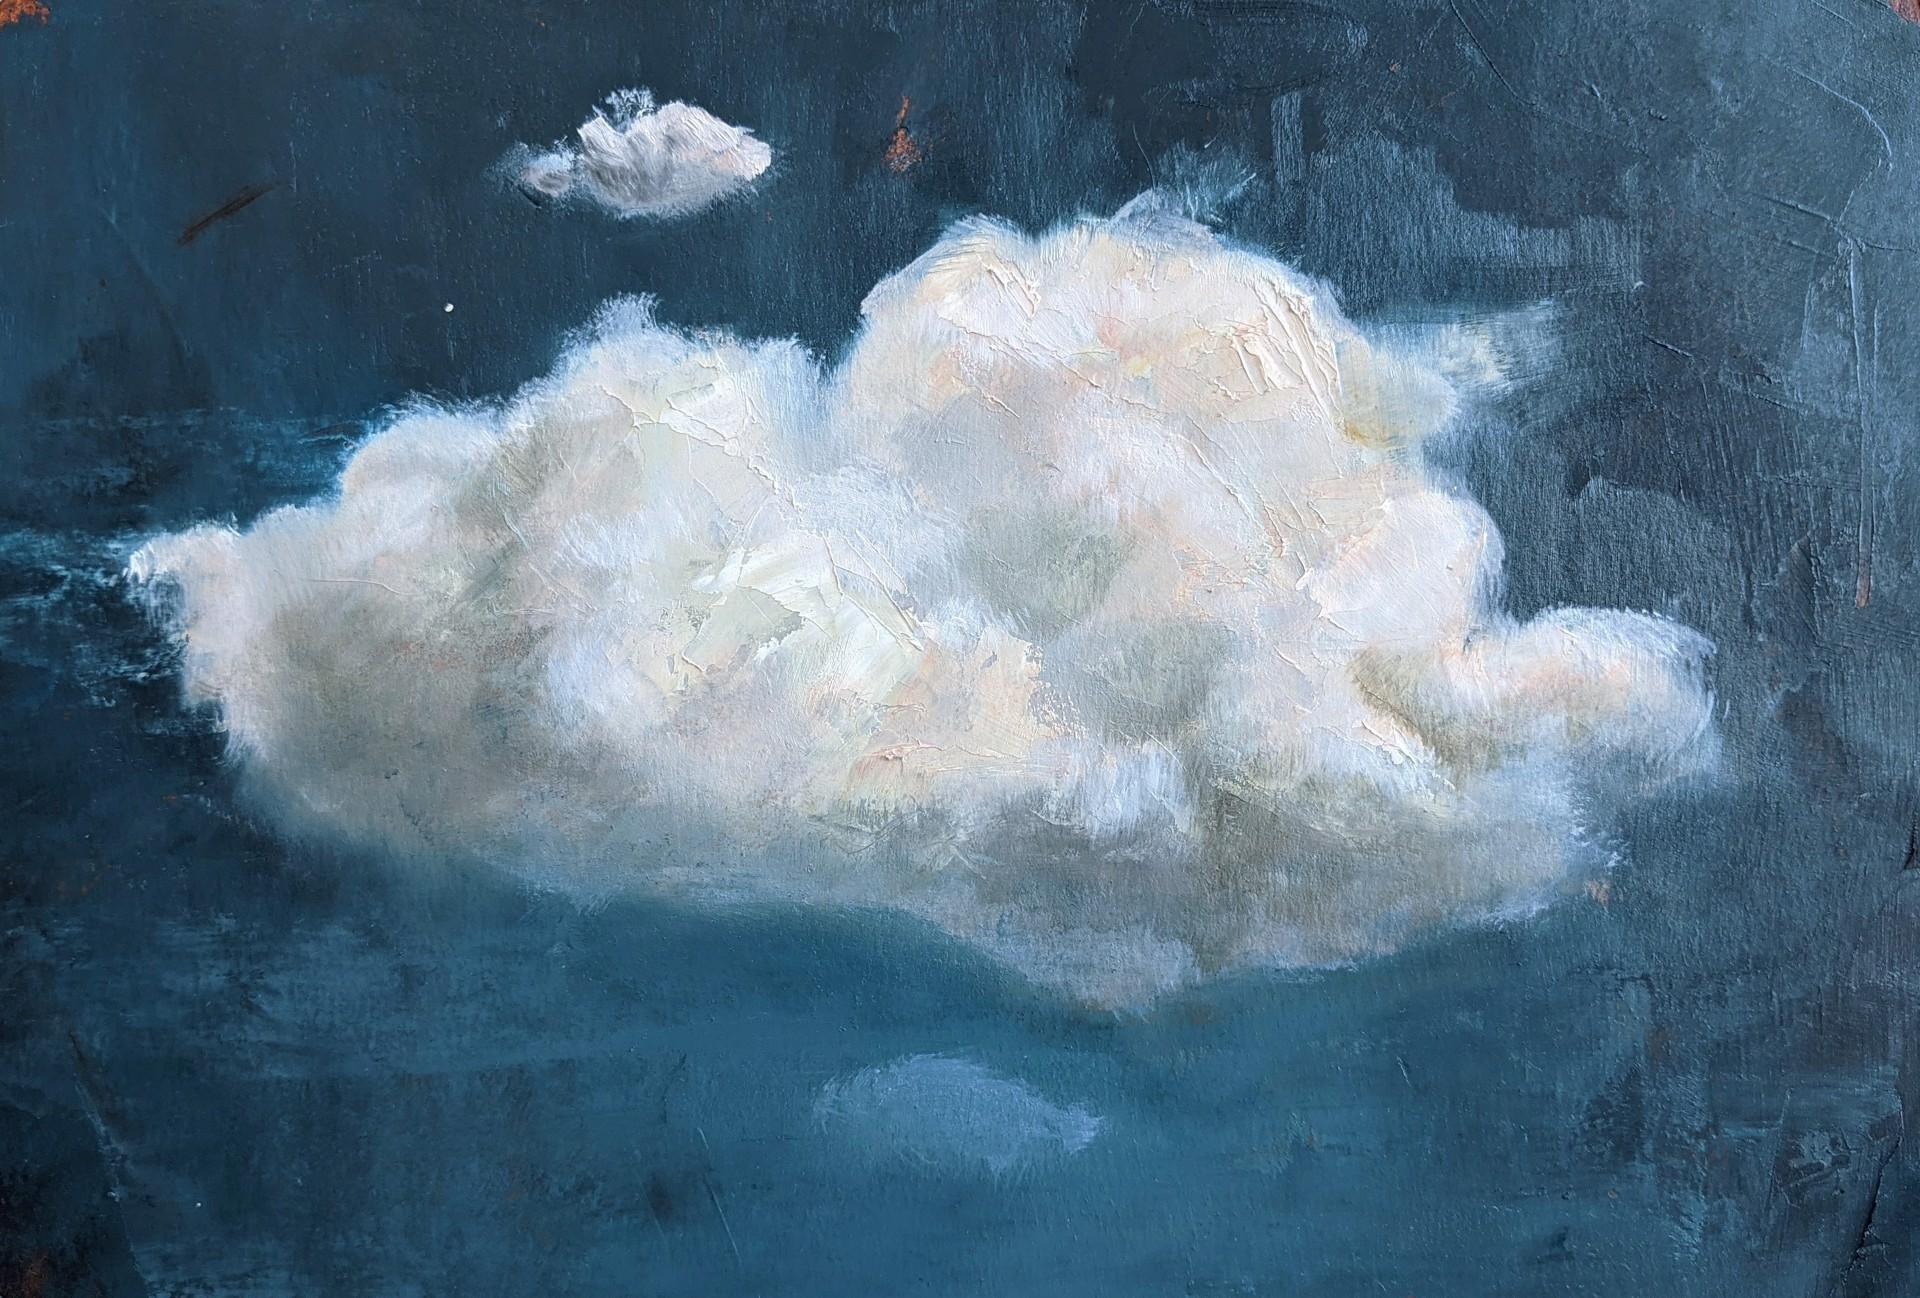 Cloud - Art by Caitlin Hurd